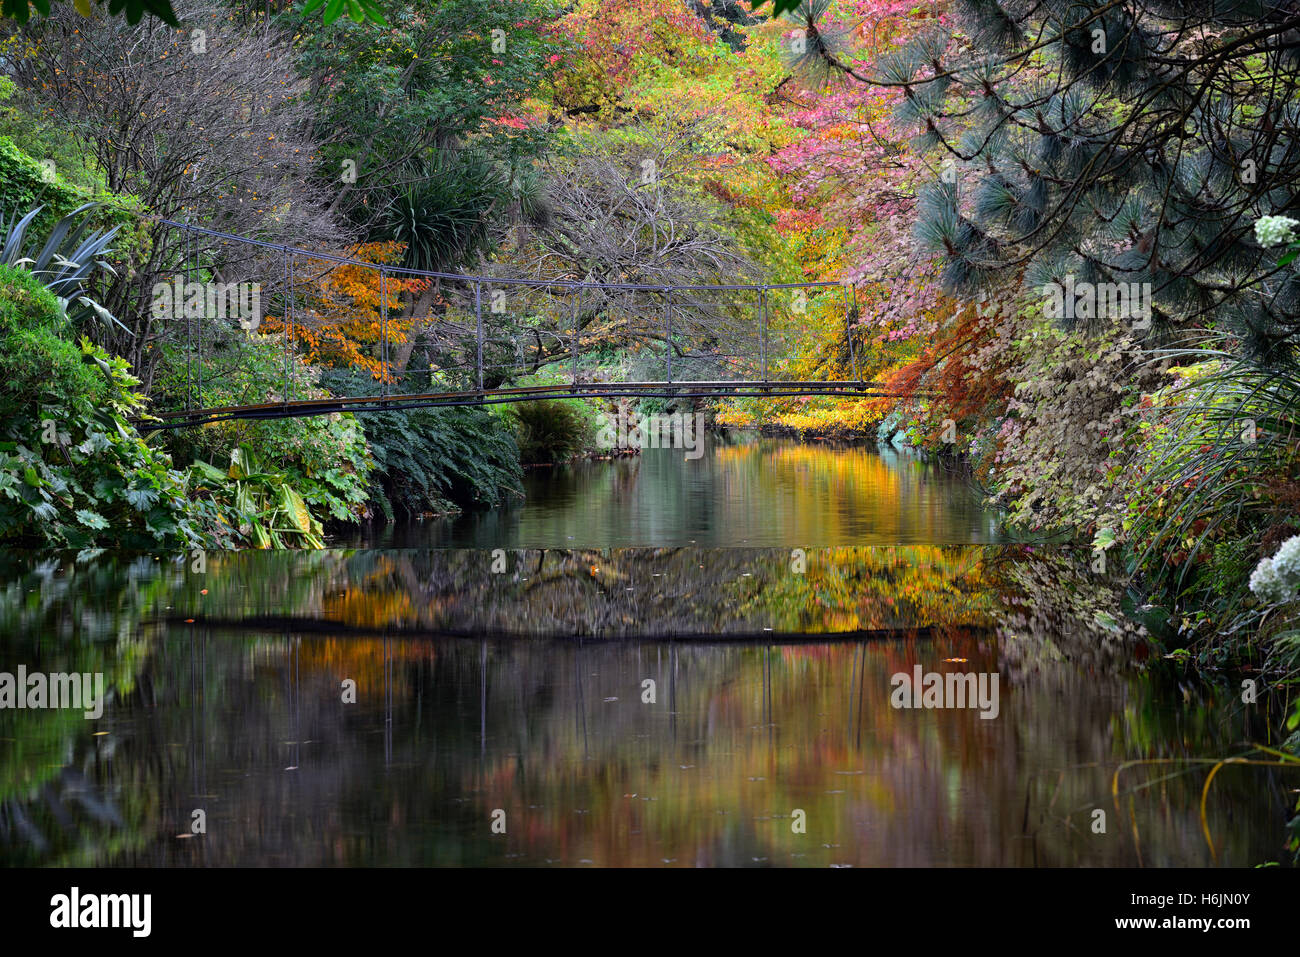 Fussgängerbrücke wider spiegeln Reflexion Vartry Fluss Mount Usher Gardens Wicklow Herbst herbstliche Farbe Farben RM Floral Stockfoto